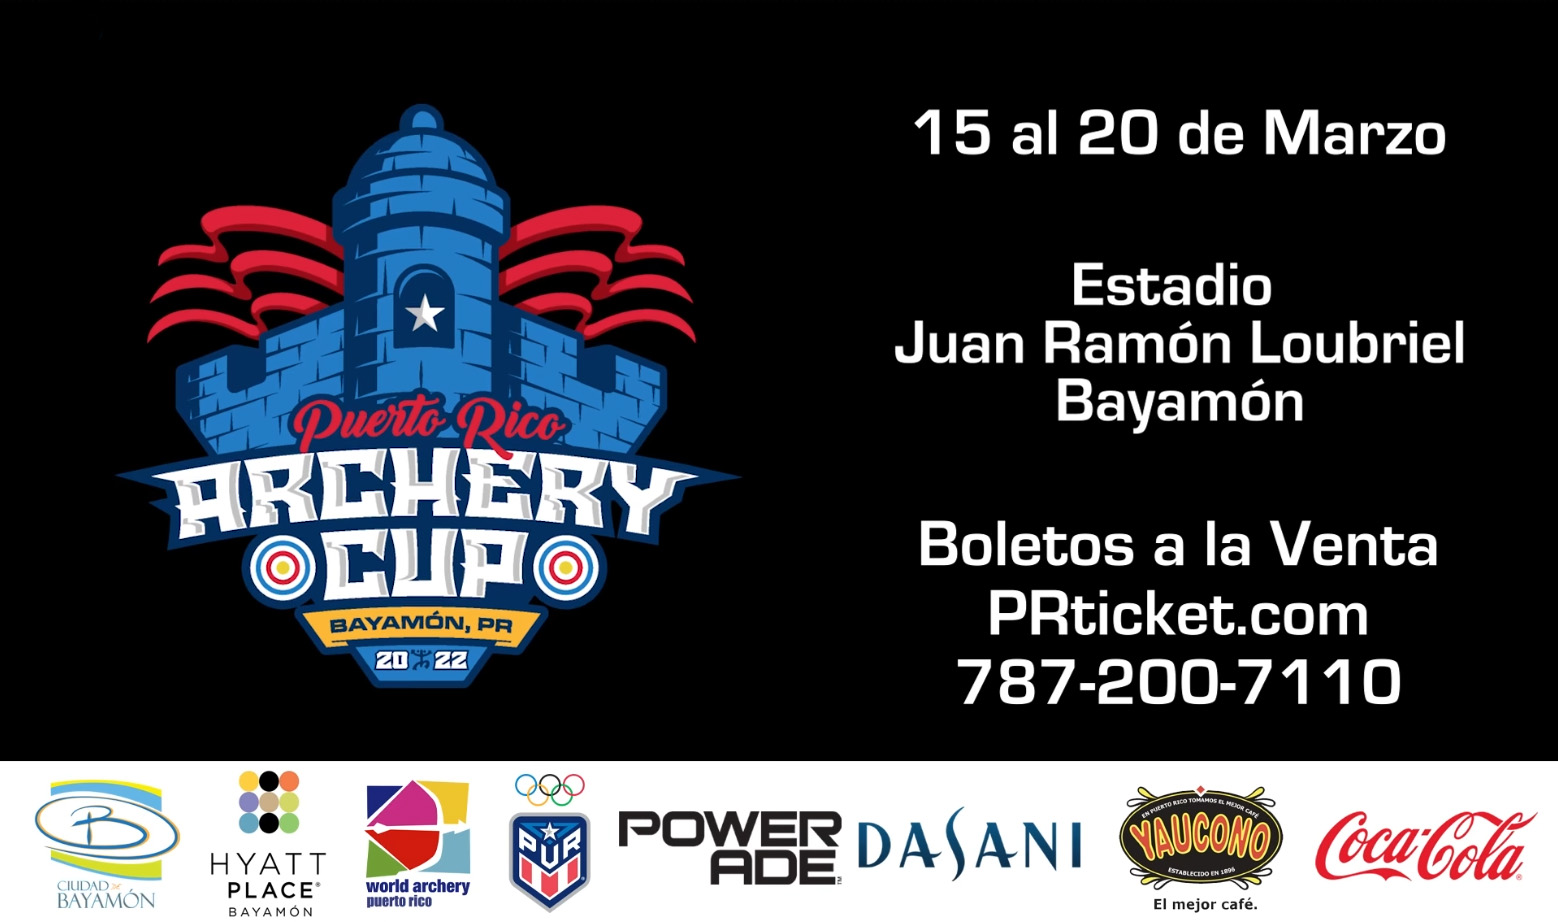 Puerto Rico Archery Cup desde el 15 de marzo en el Estadio Juan Ramon Loubriel